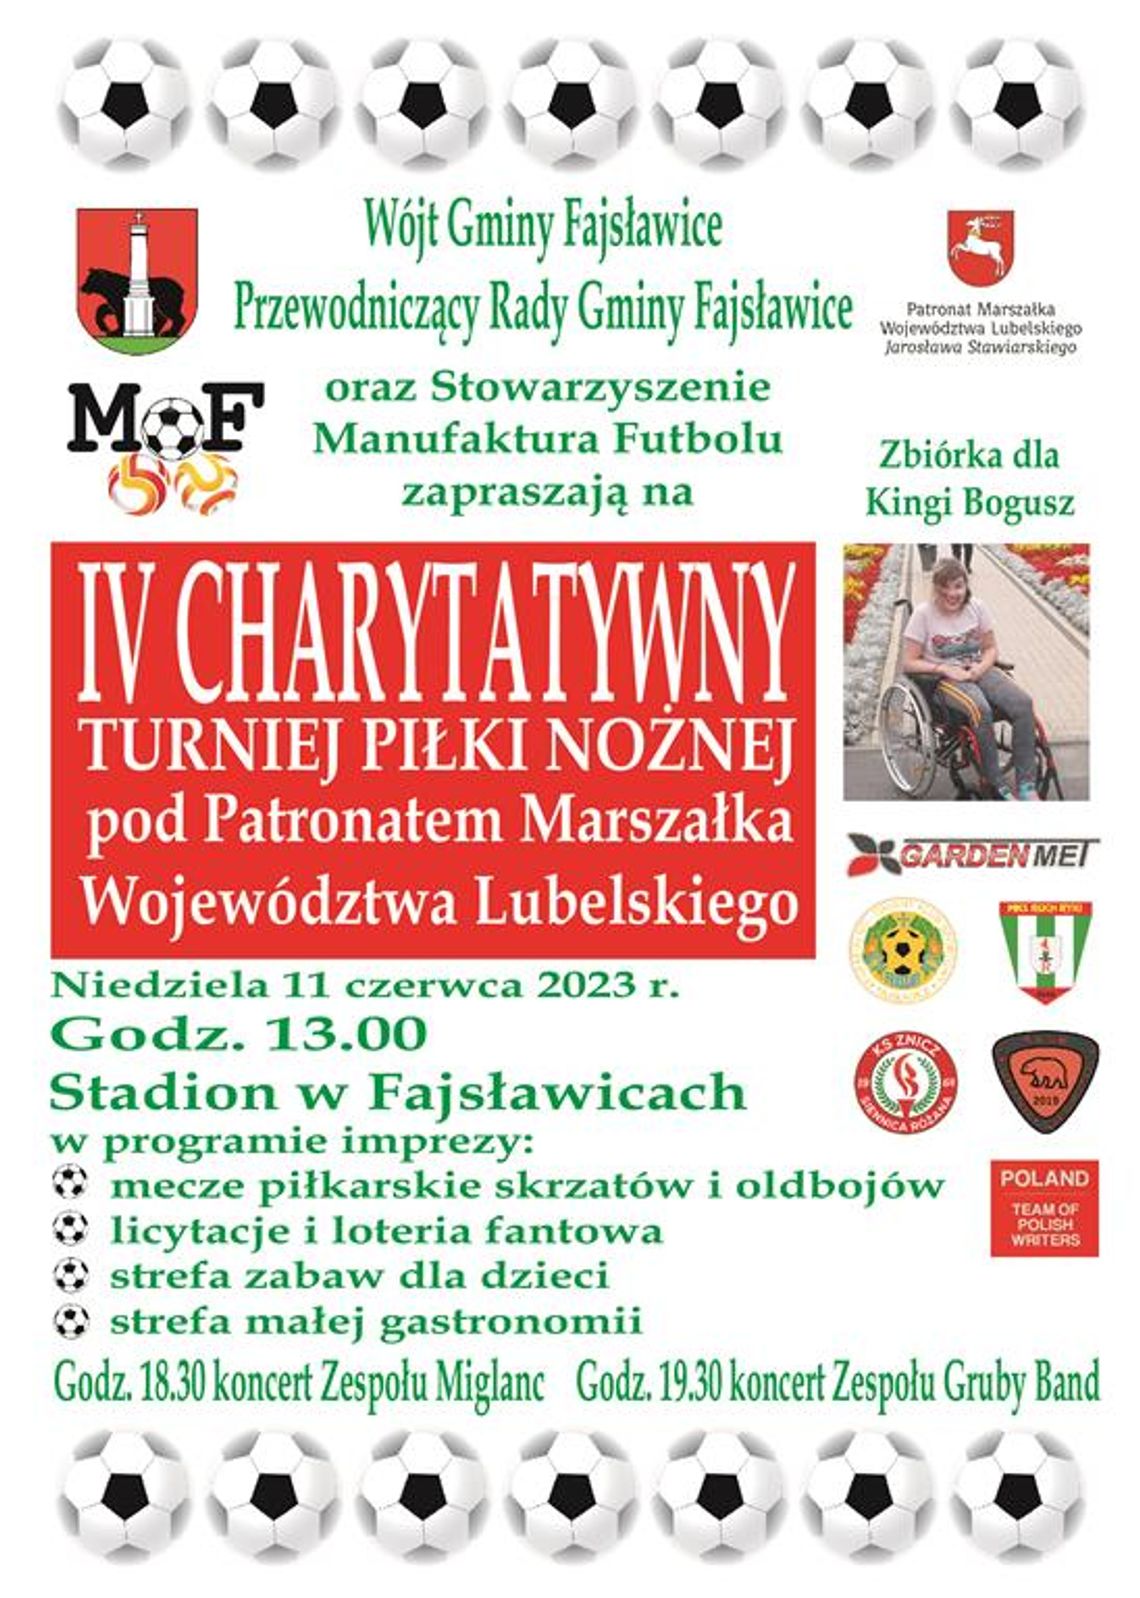 Plakat informuje o IV Charytatywnym Turnieju Piłki Nożnej pod Patronatem Marszałka Województwa Lubelskiego, który odbędzie się 11 czerwca 2023r. na boiskach sportowych w Fajsławicach